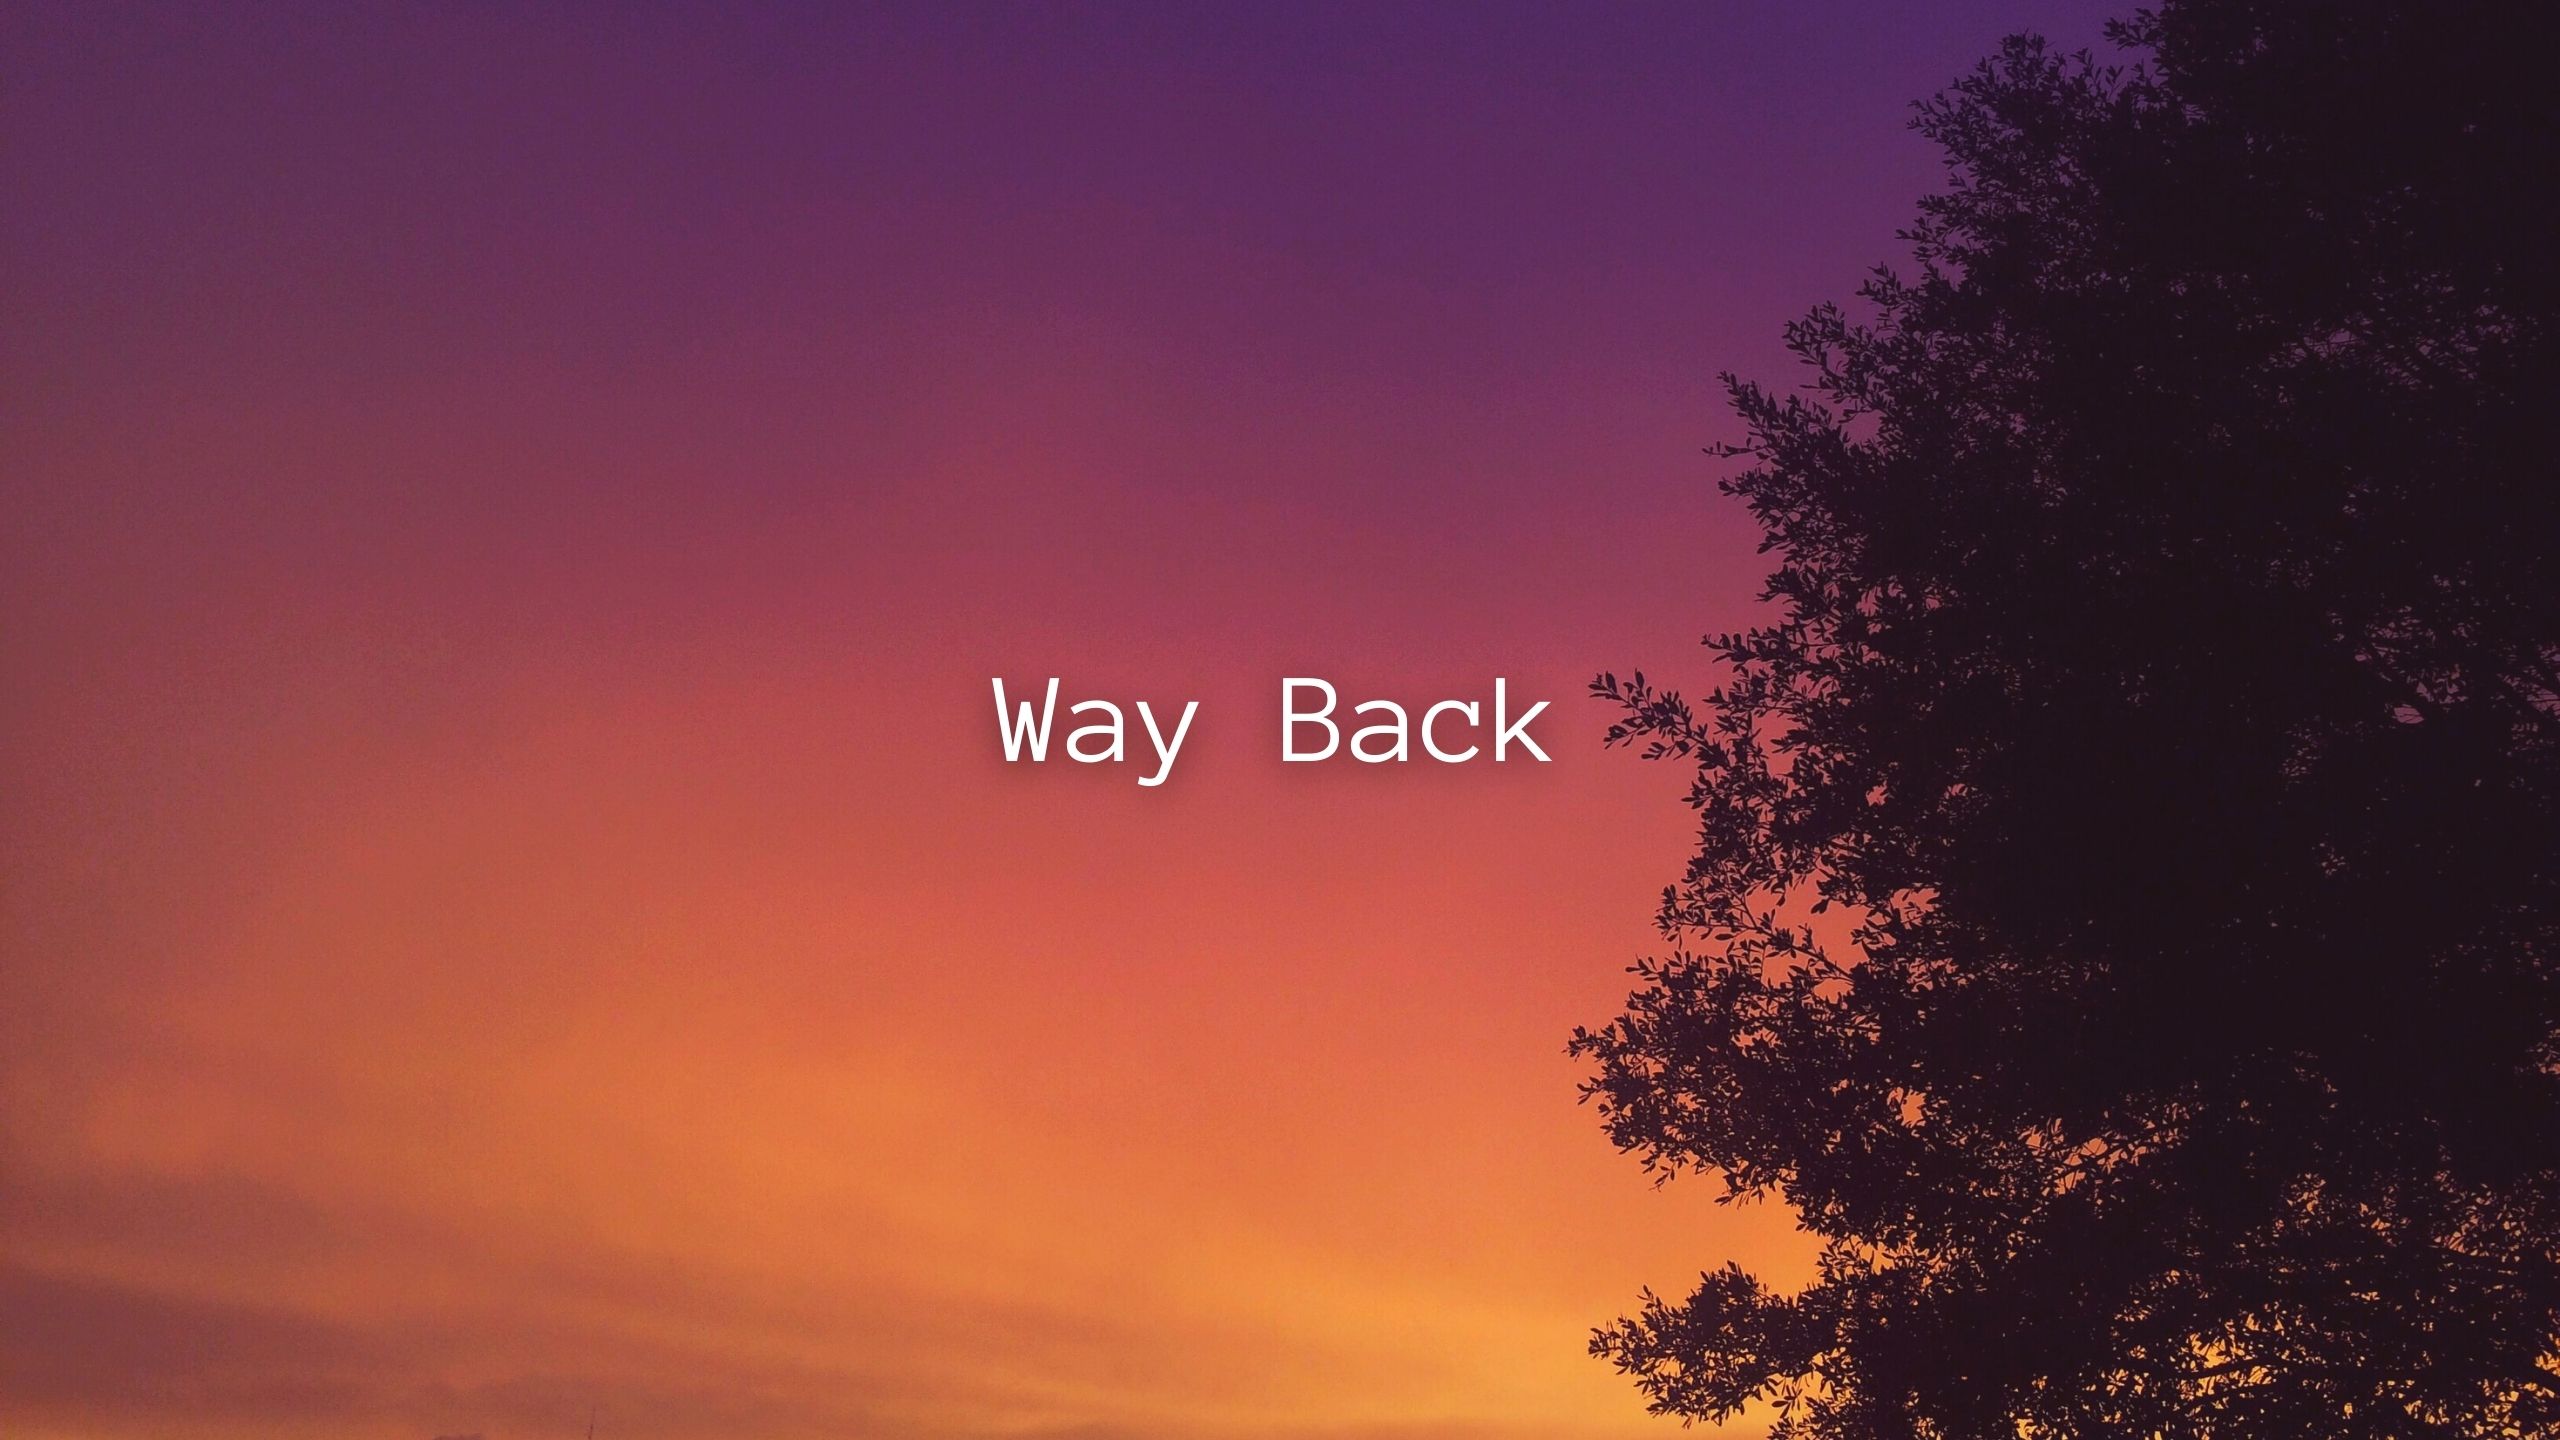 Way Back(レコードノイズ無しバージョン)